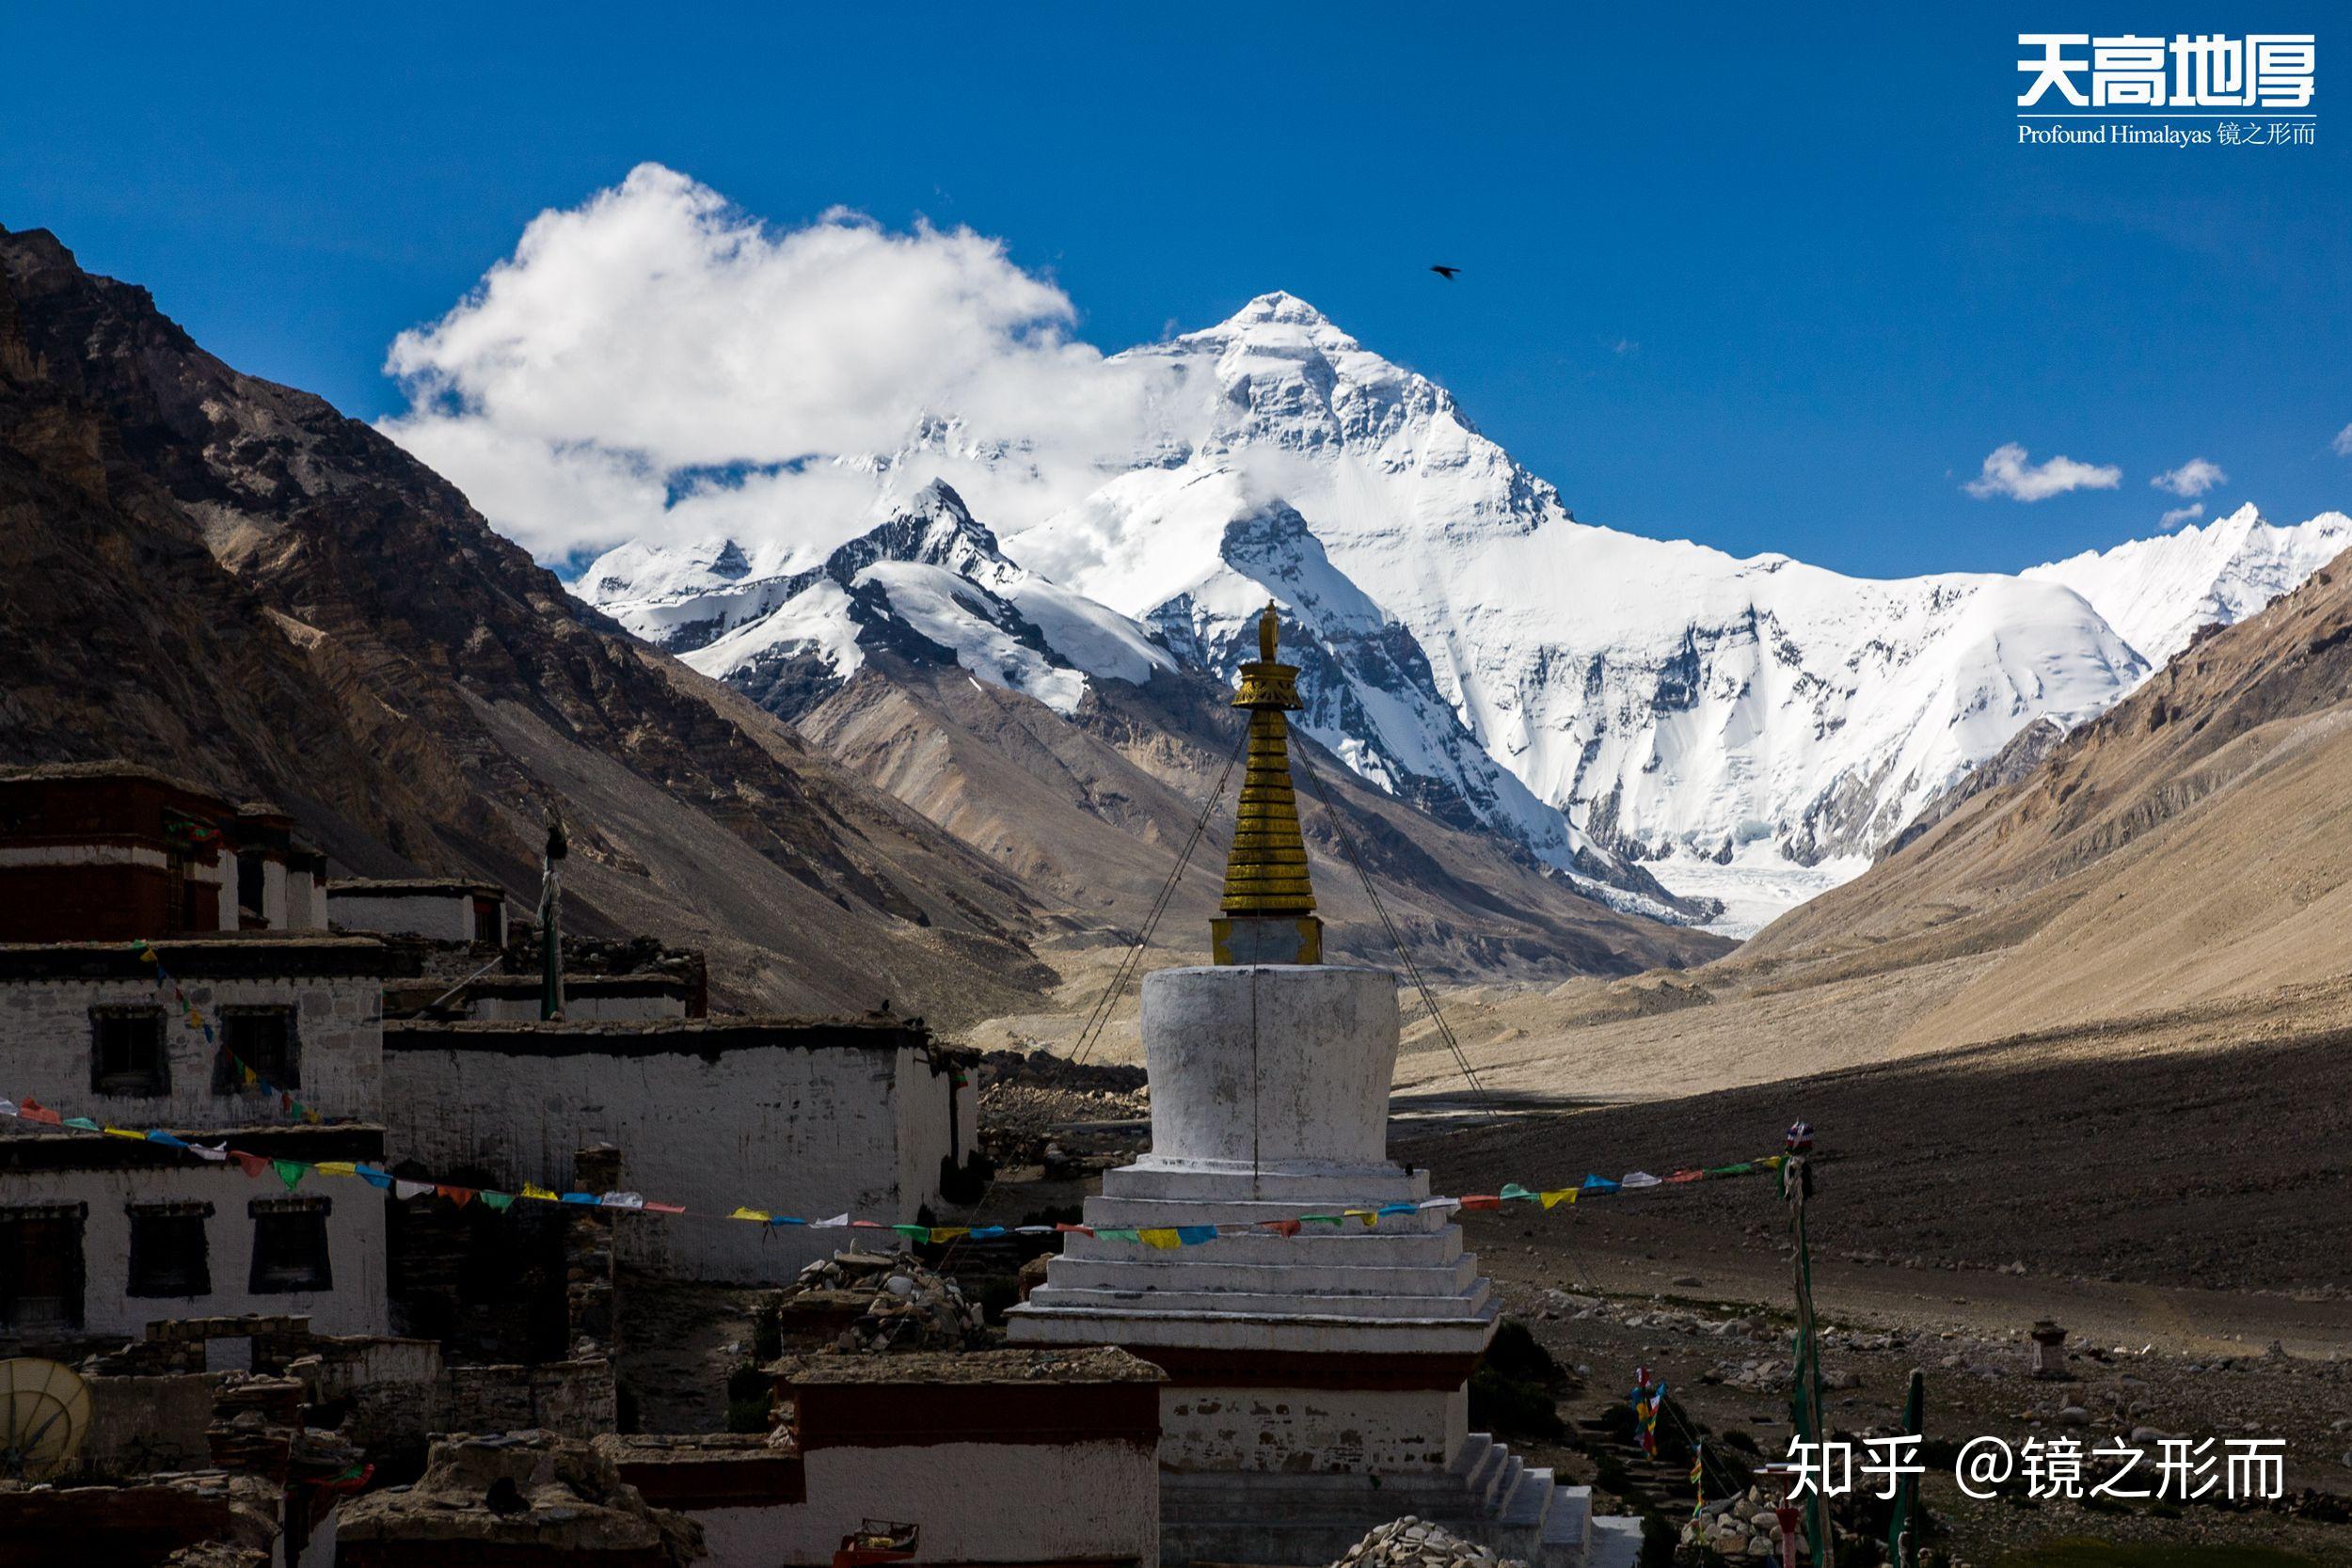 提到珠穆朗玛峰,外国人首先想到的是中国还是尼泊尔? 